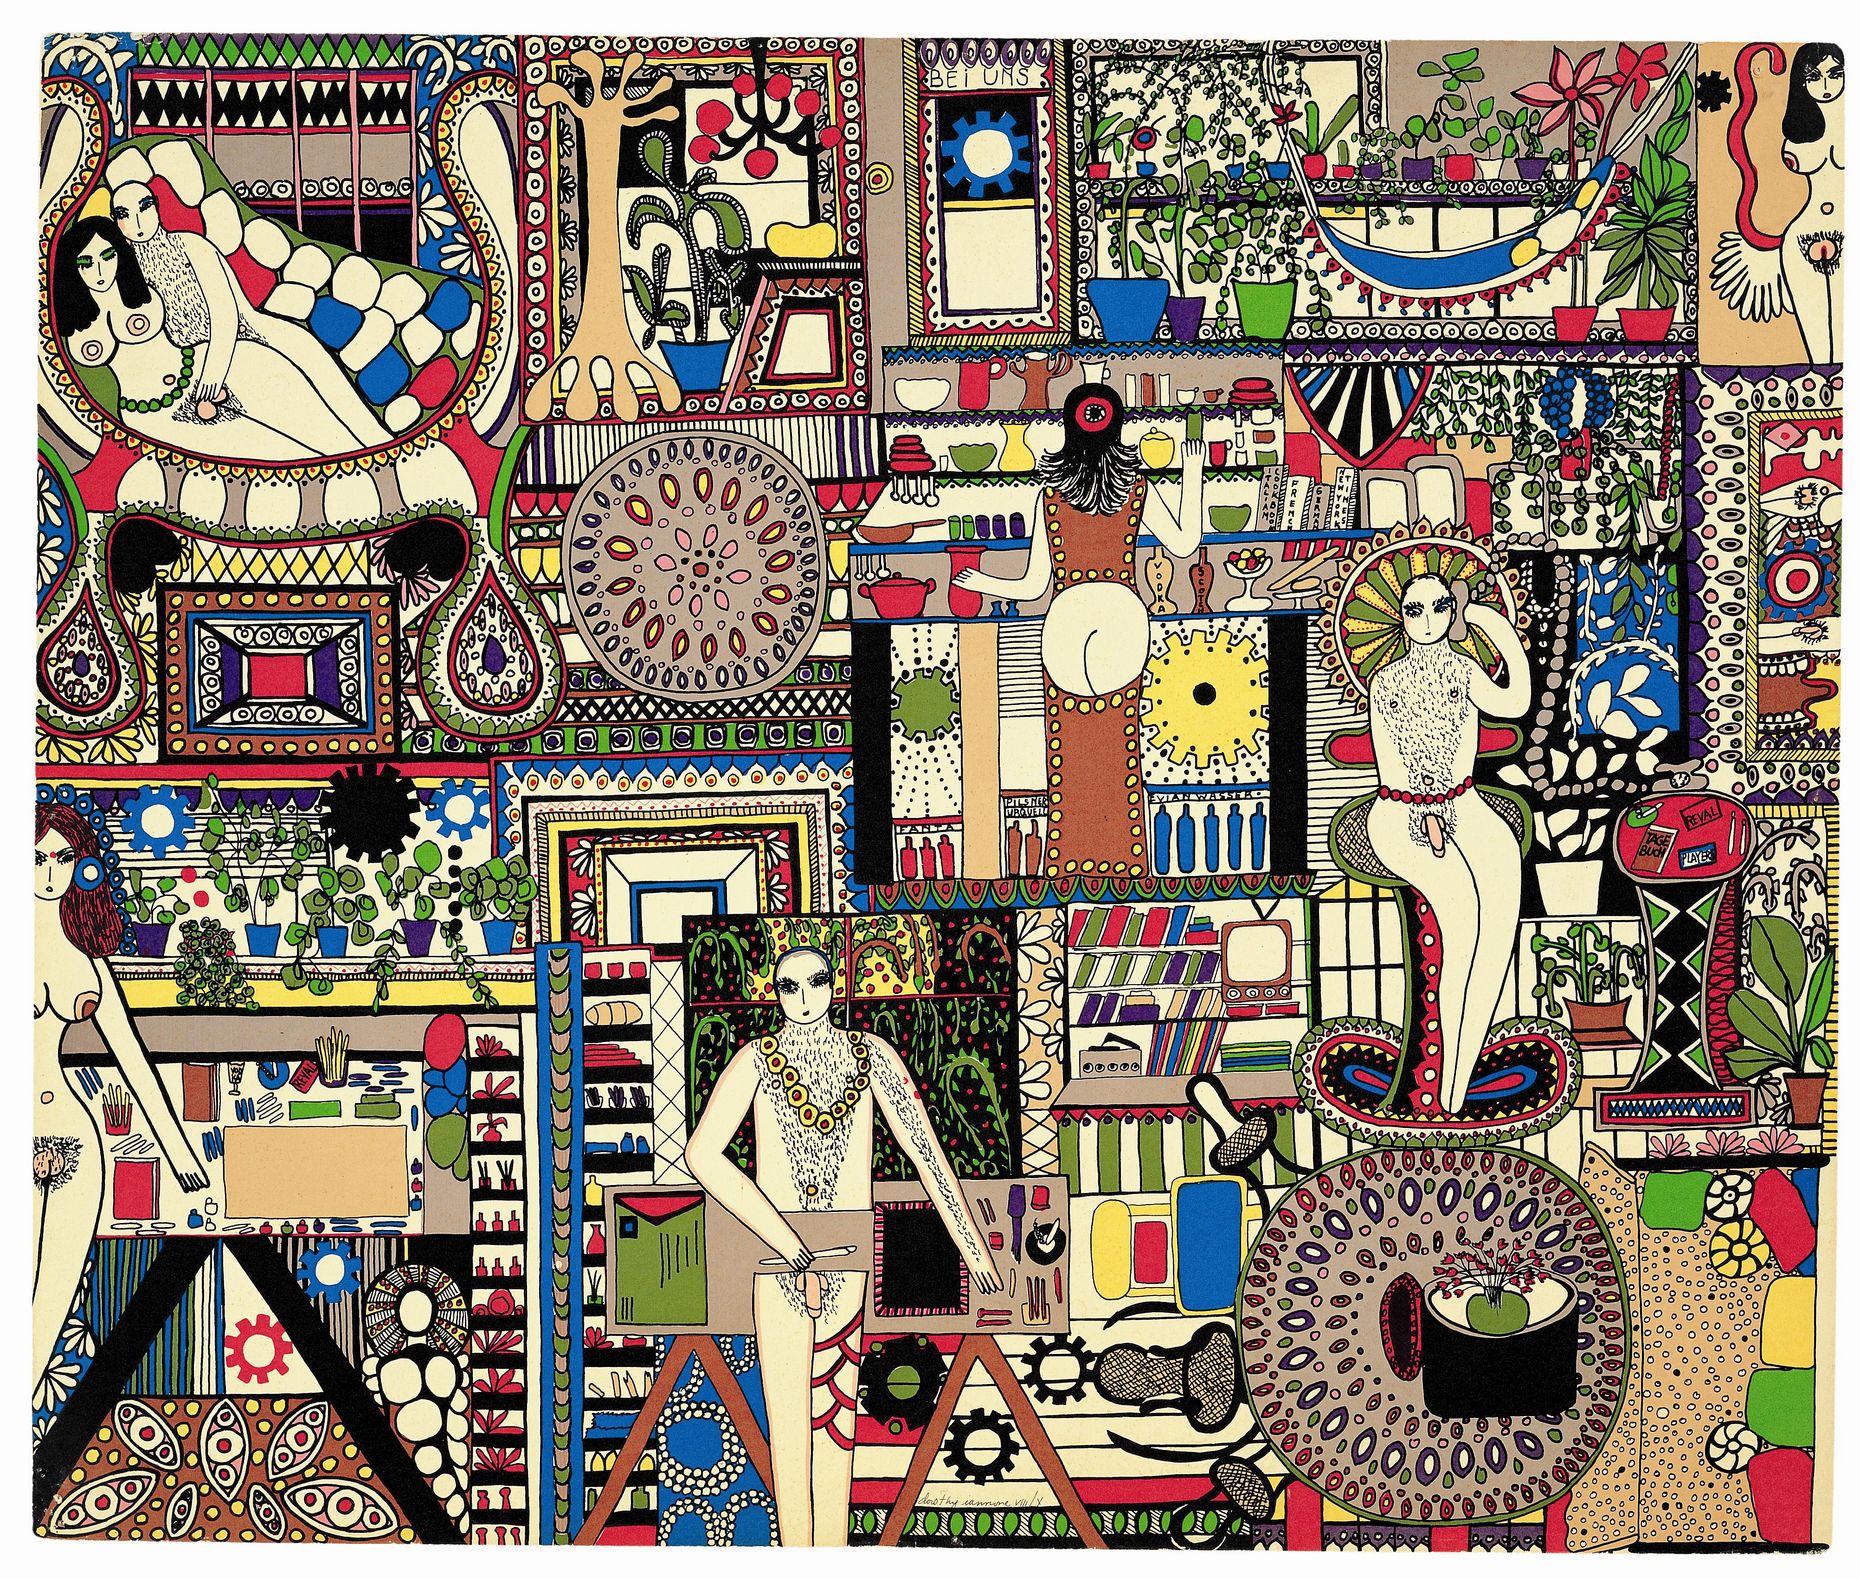 Druck von Dorothy Iannone, Farbsiebdruck auf Papier, 72,5 x 87 cm